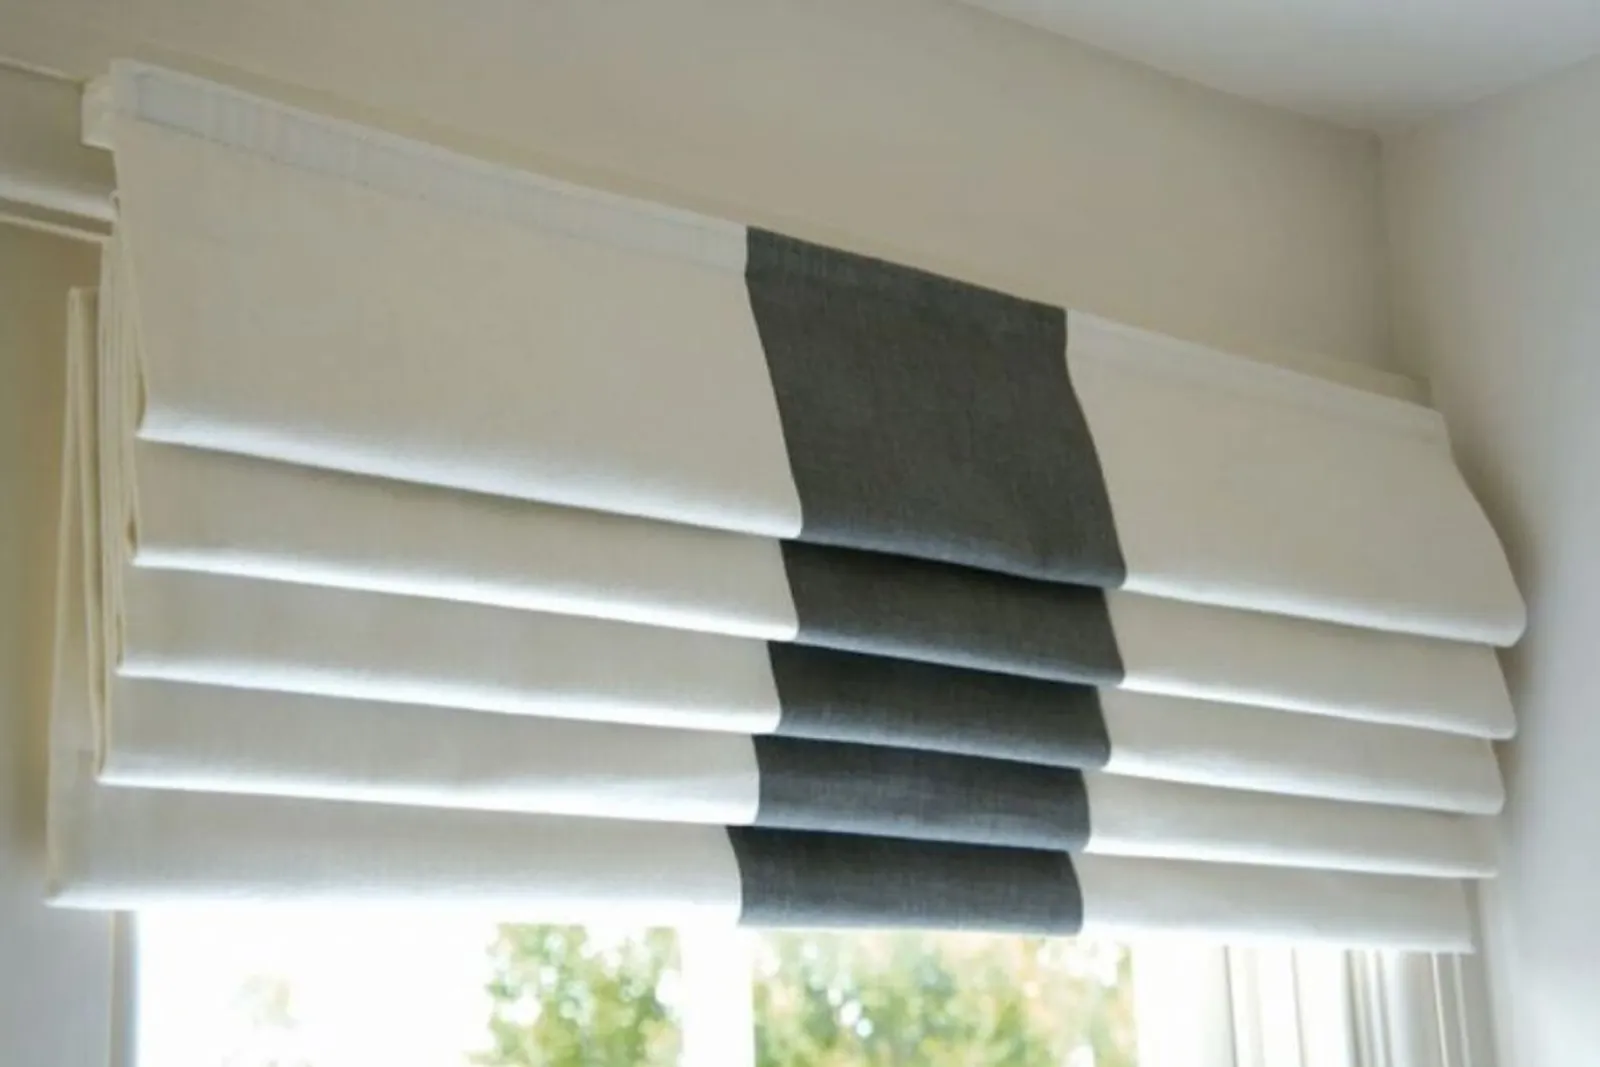 Melindungi Juga Mempercantik, Ini 9 Jenis Window Blinds untuk Rumah